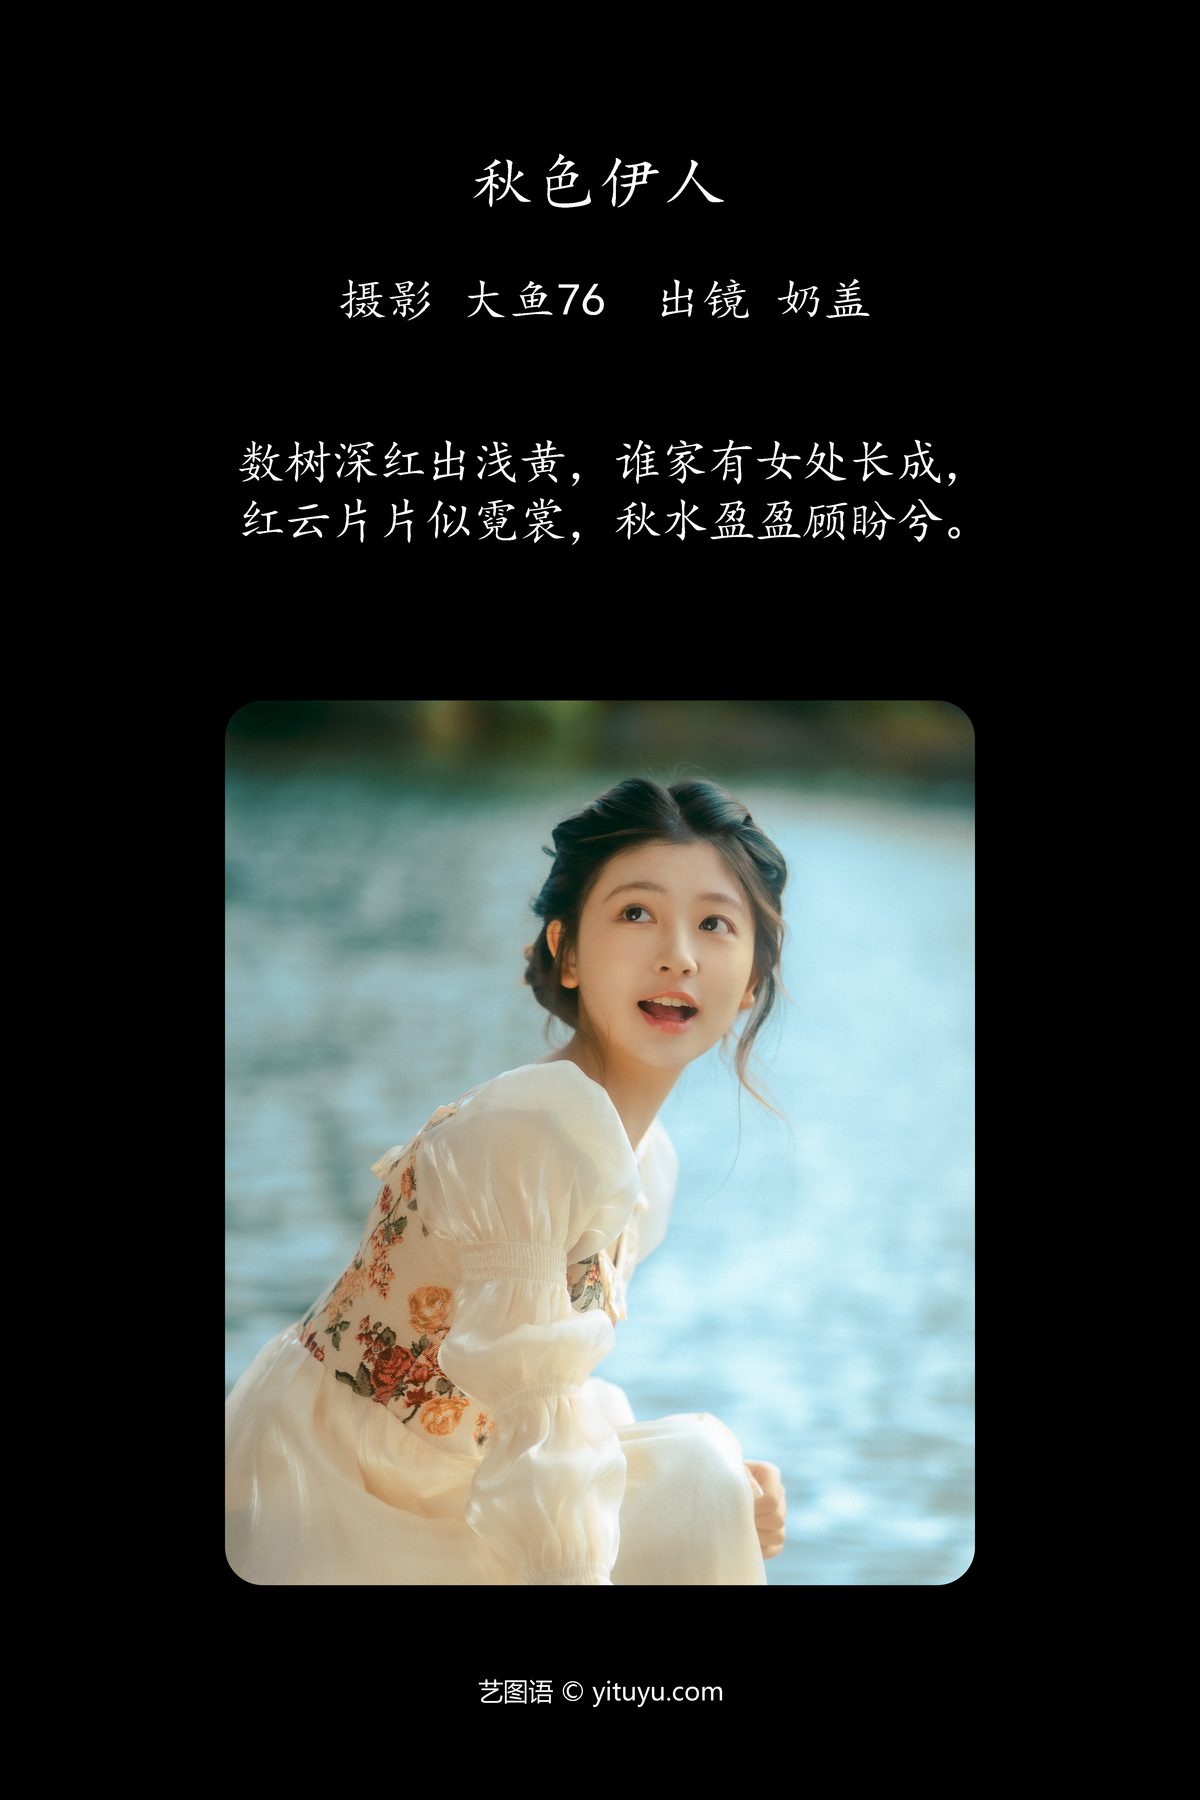 YiTuYu艺图语 Vol 6100 Zhi He Nai Gai 0002 0680291930.jpg